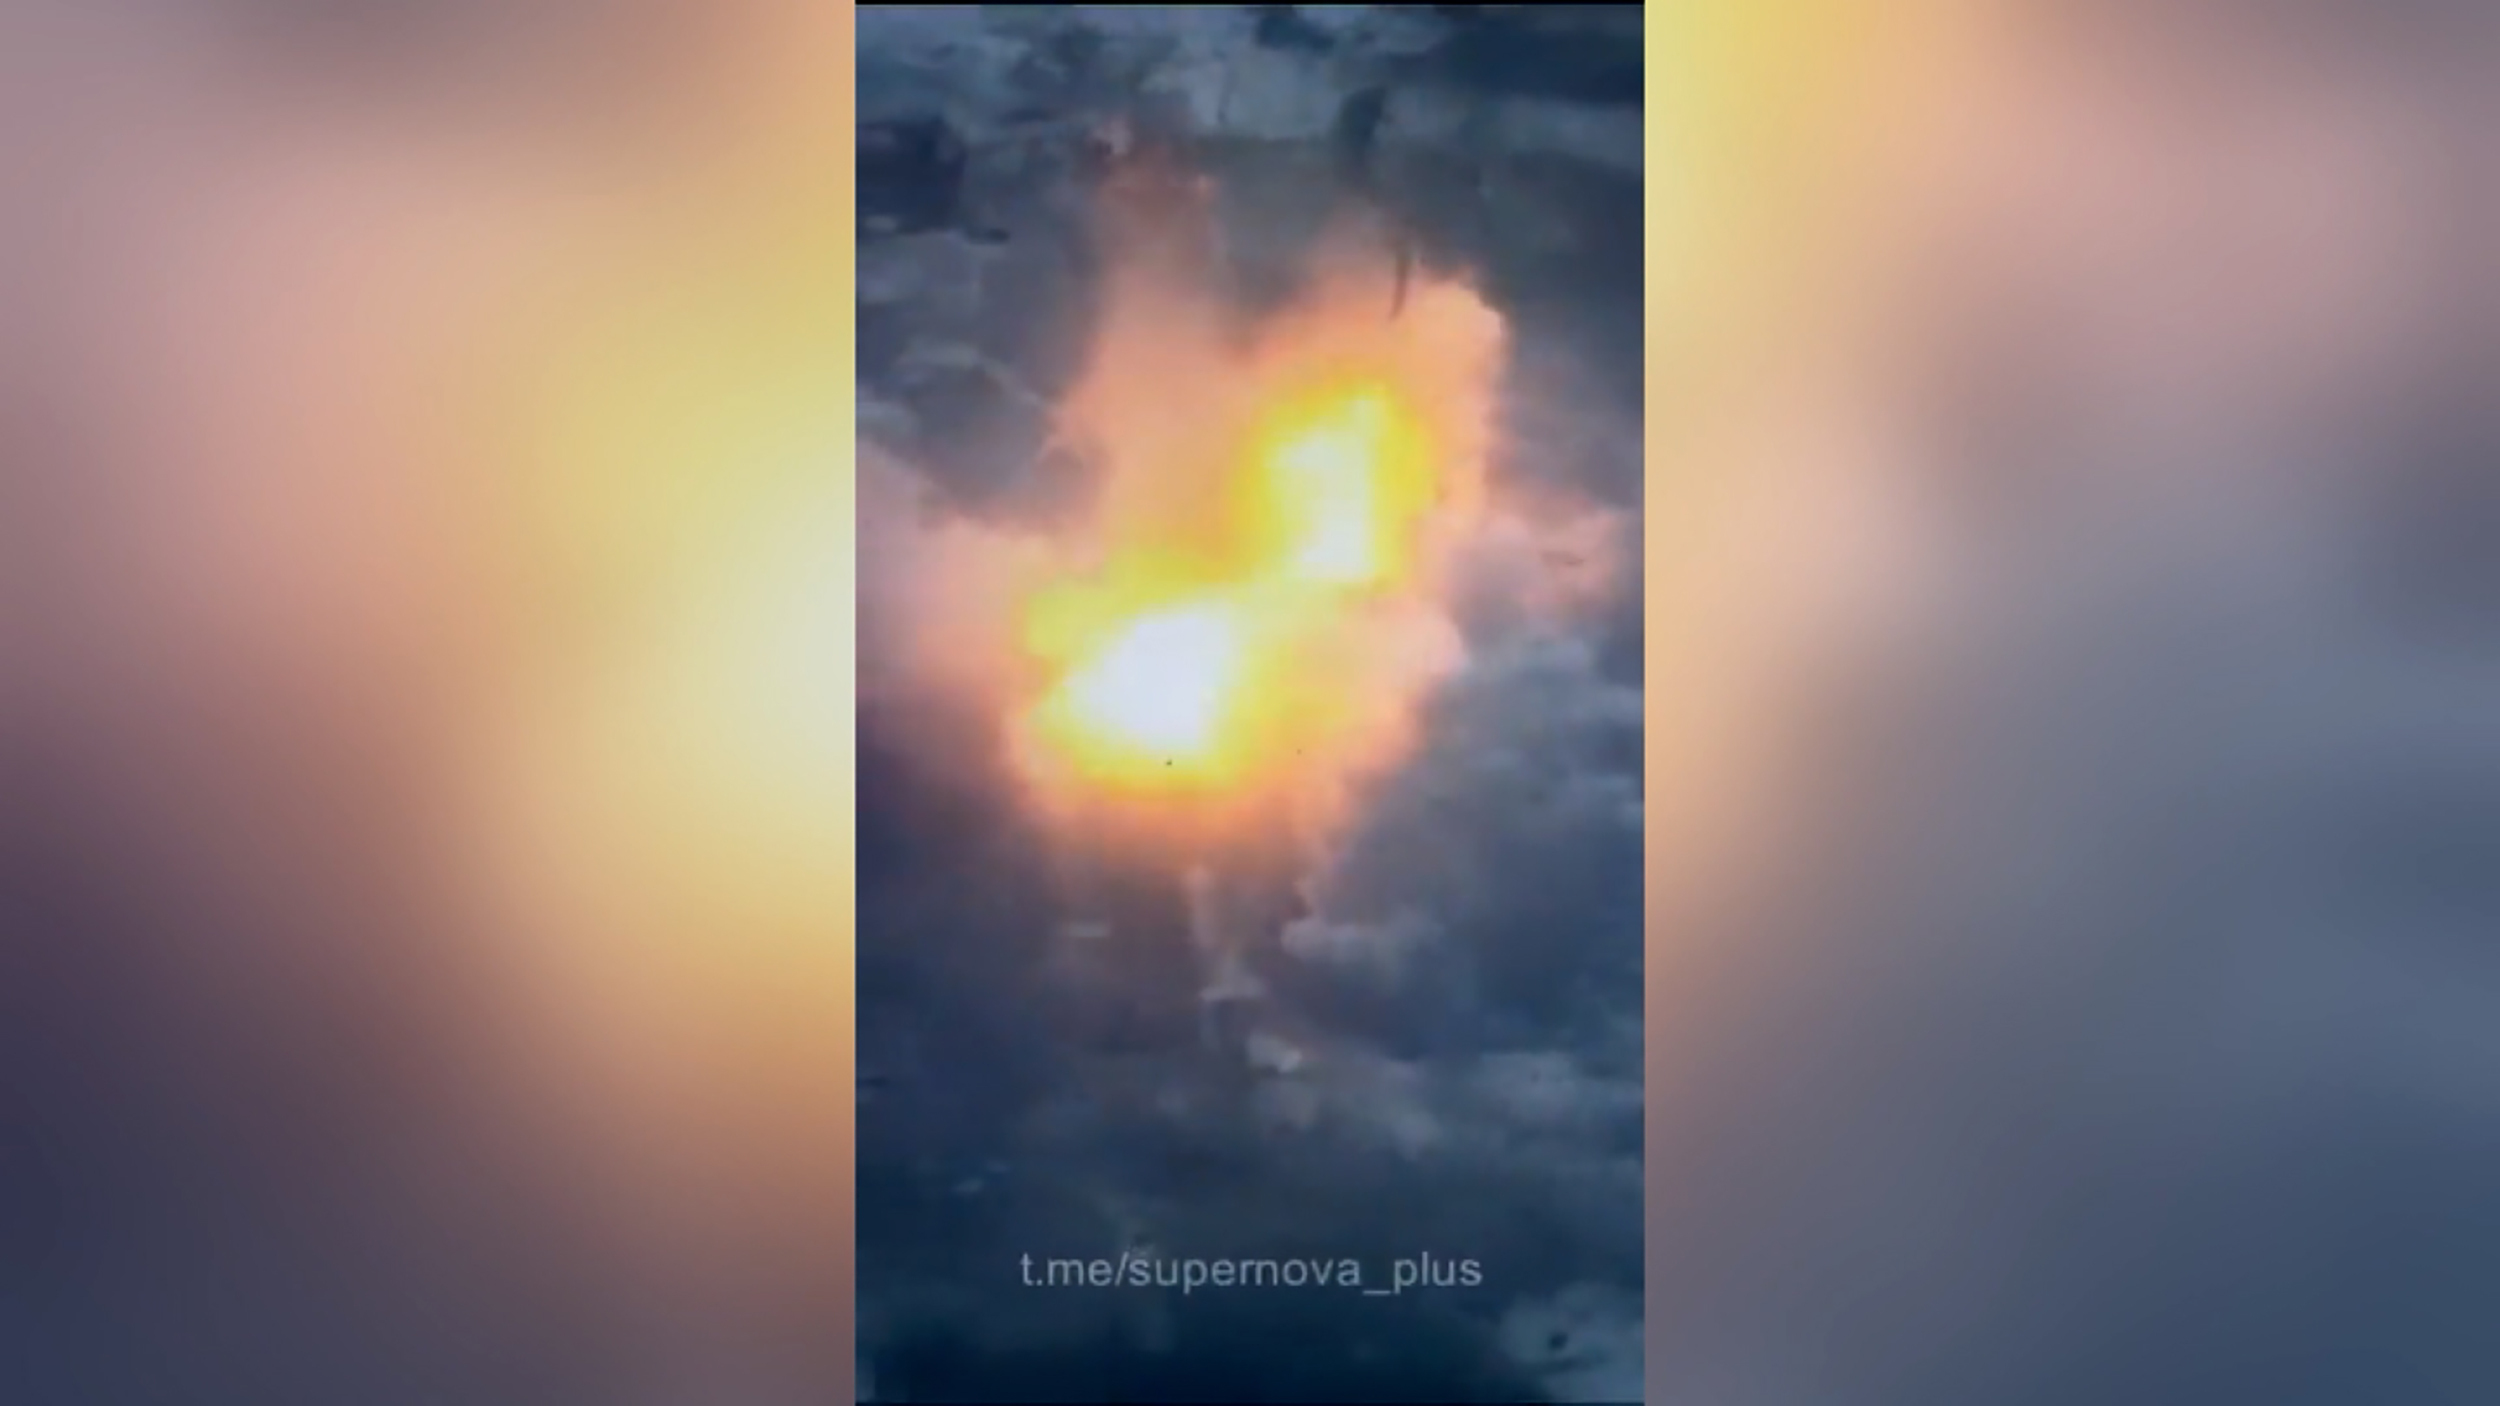 在这张视频剧照中，可以看到一栋似乎是俄罗斯军队避难所的建筑物发生爆炸。